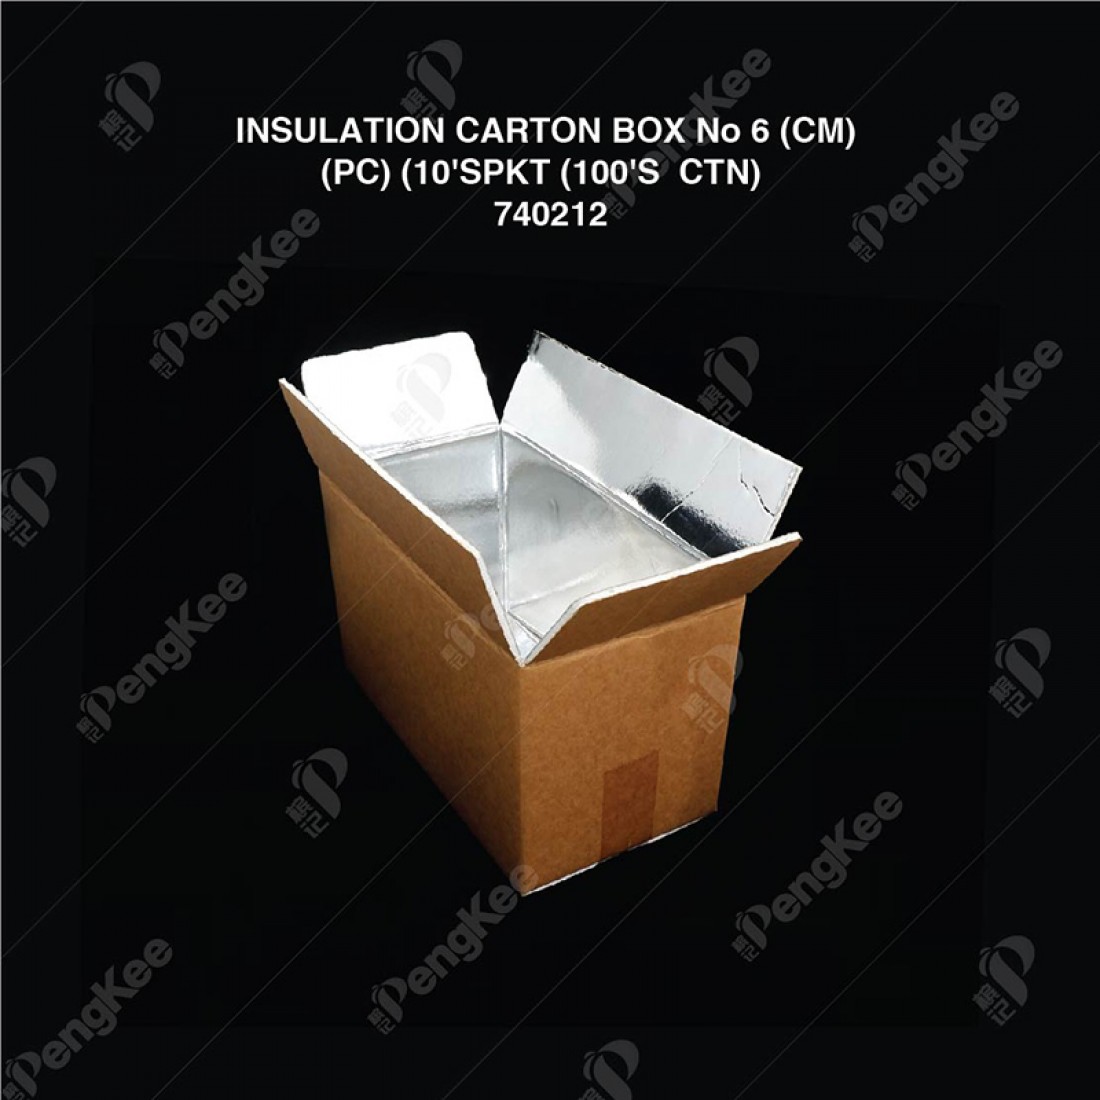 INSULATION CARTON BOX No 6 (CM) (PC) (10'S/PKT)